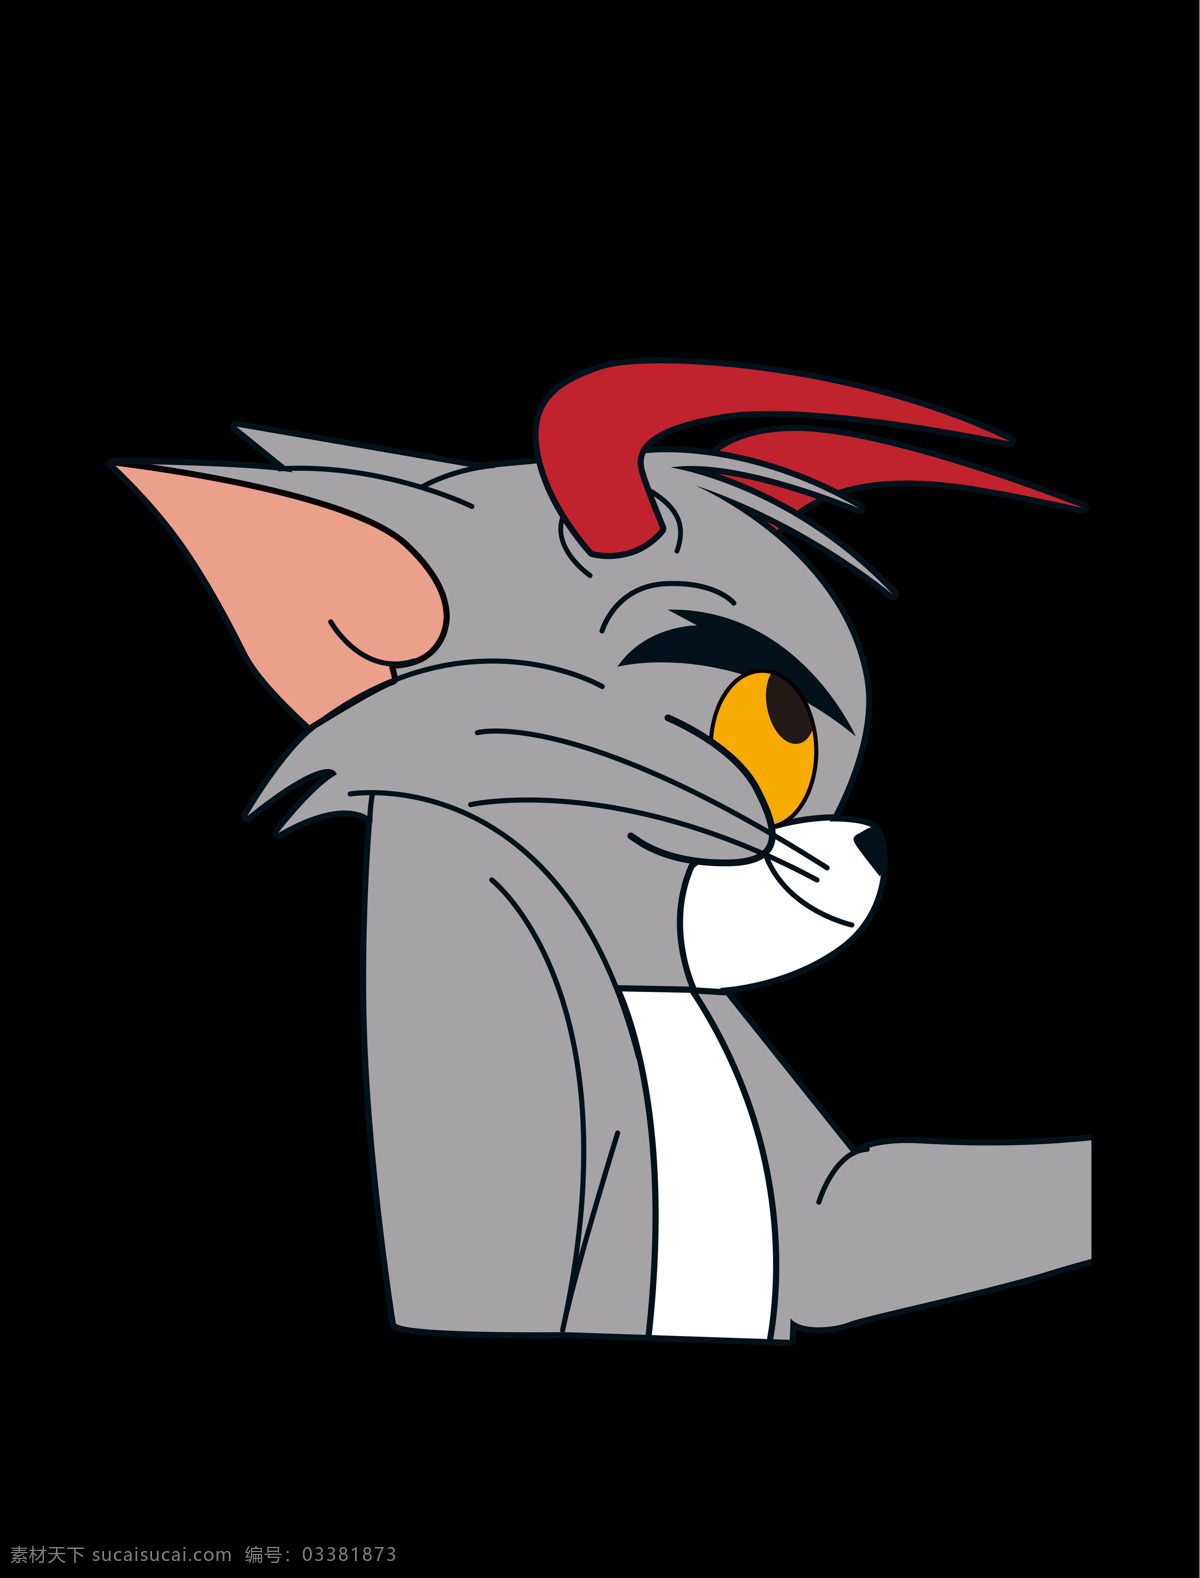 汤姆 卡通人物 动漫人物 猫和老鼠 猫 老鼠 卡通 底纹边框 背景底纹 动漫动画